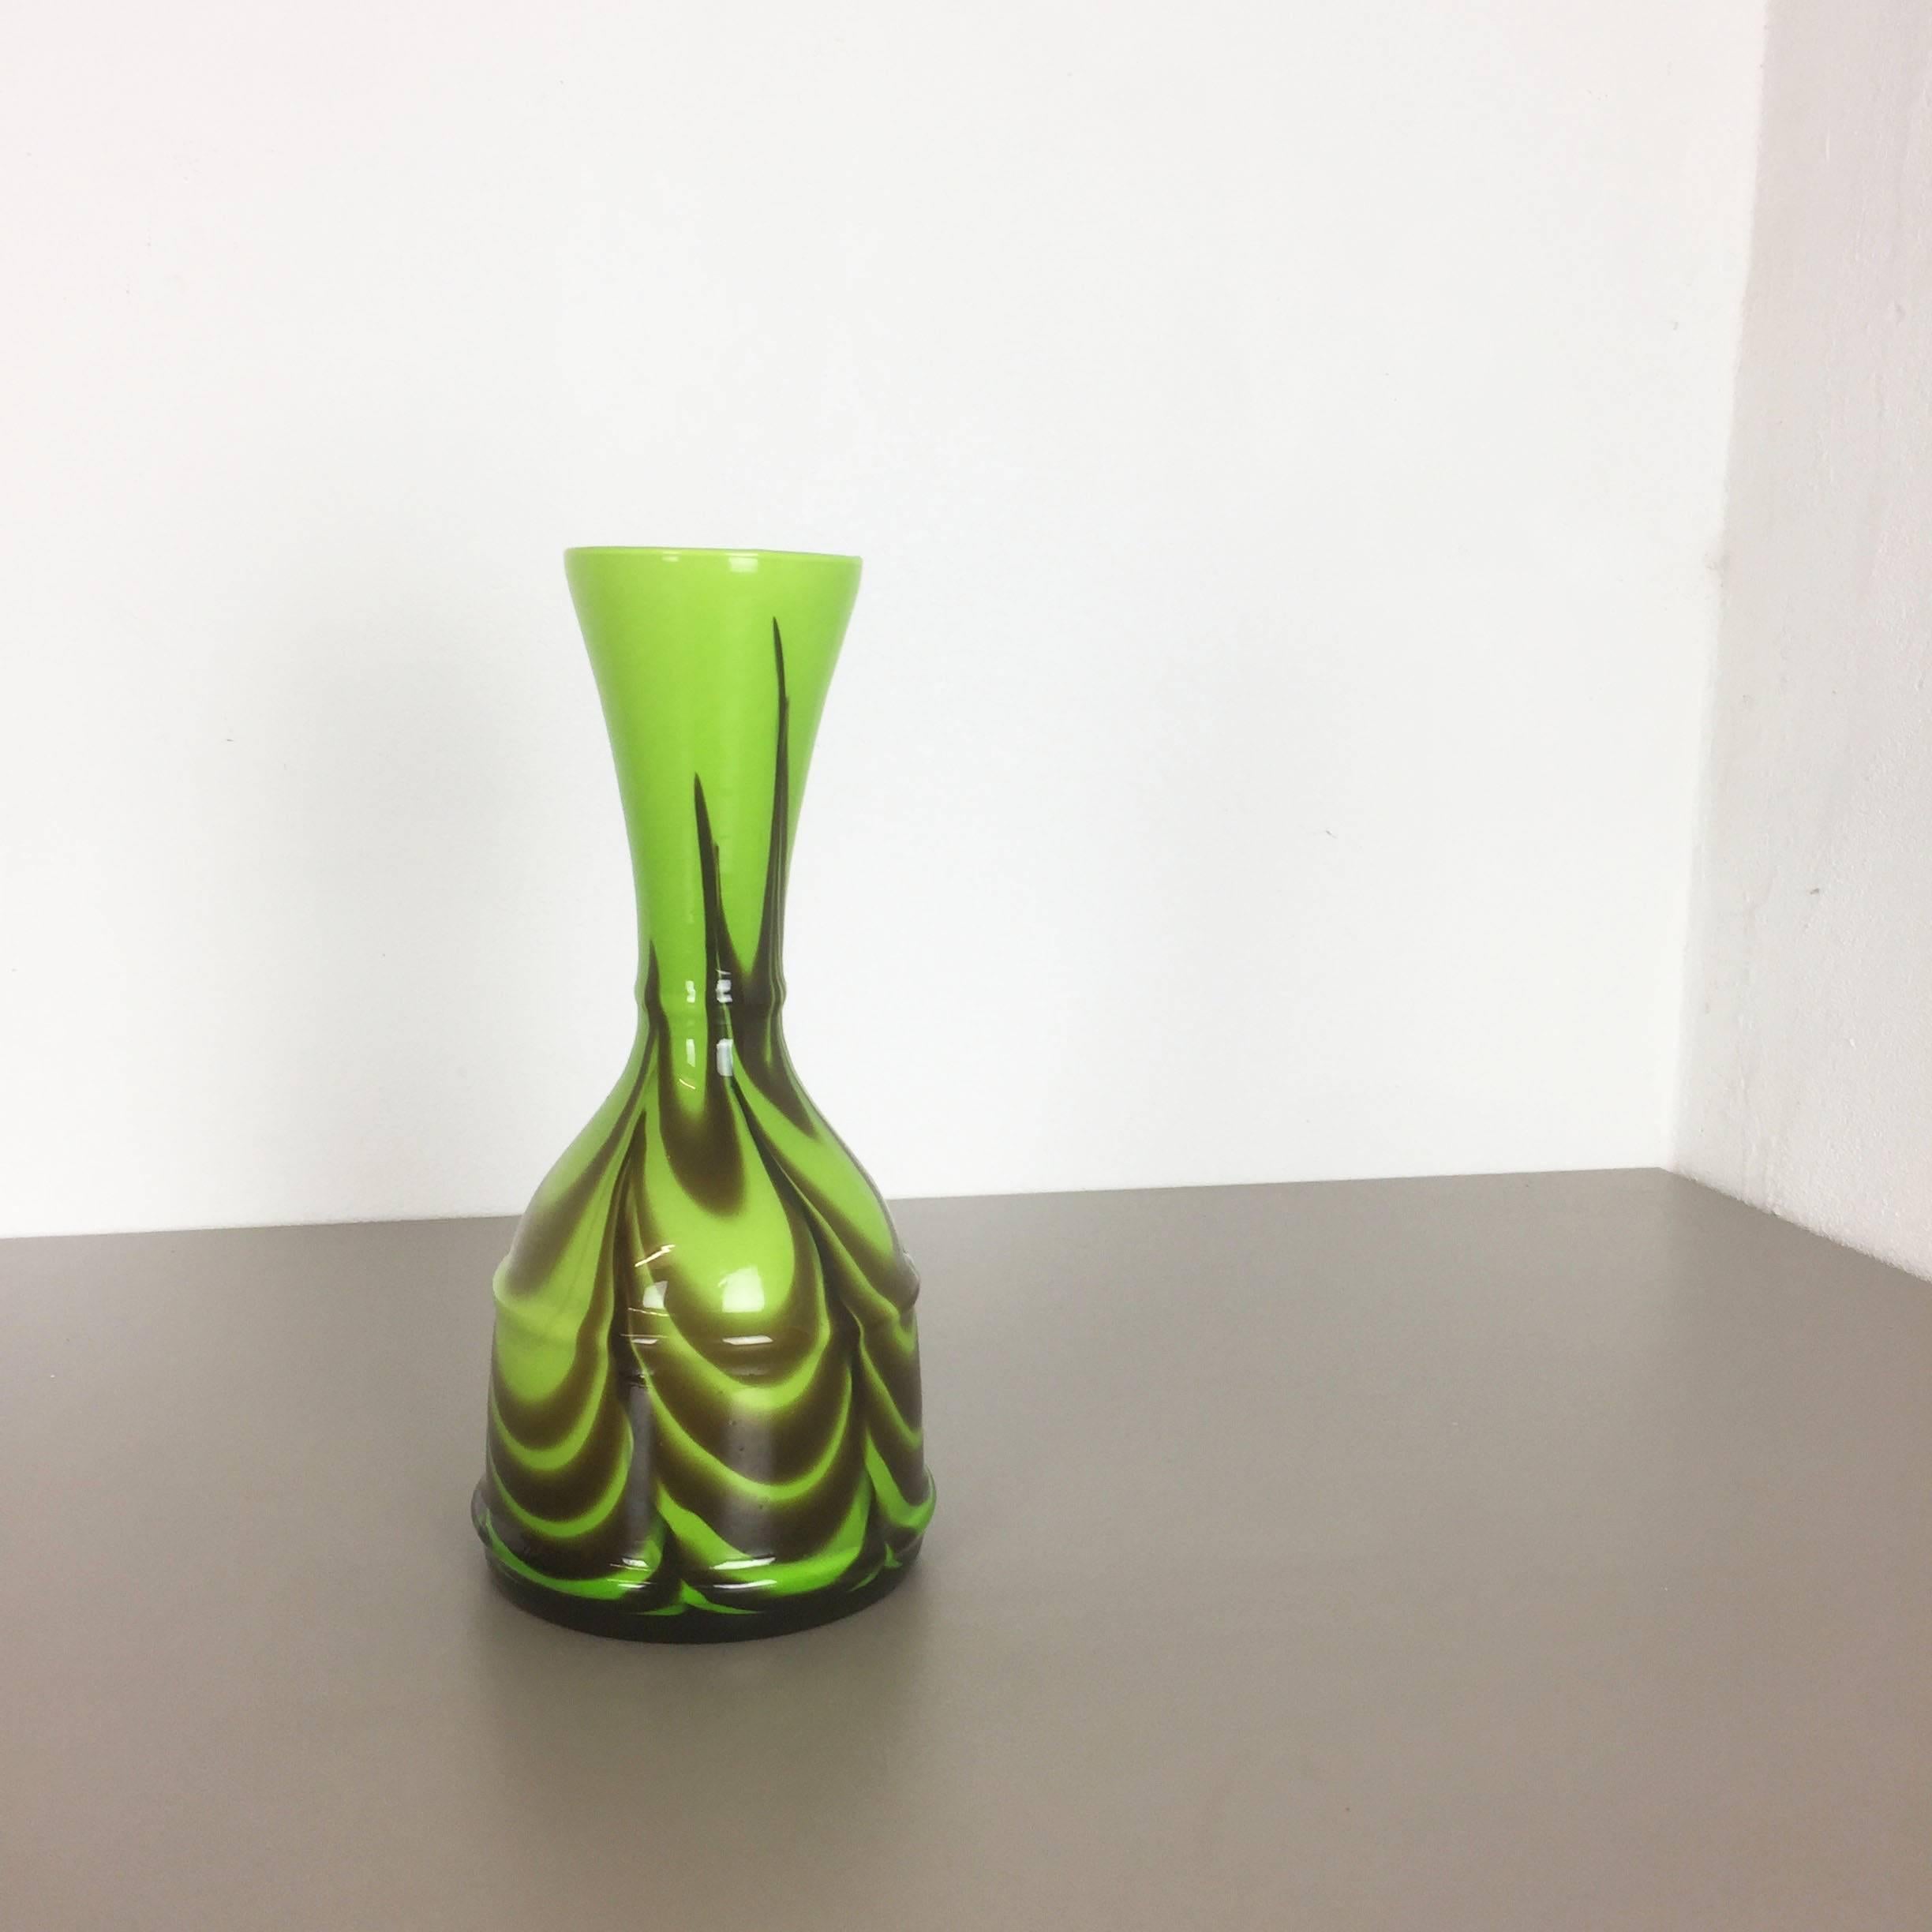 Artikel:

Pop-Art-Vase


Produzent:

Opalin Florenz


Entwurf:

Carlo Moretti



Jahrzehnt:

1970er


Originale mundgeblasene Pop-Art-Vase aus den 1970er Jahren, hergestellt in Italien von Opaline Florenz. Diese Vase wurde von